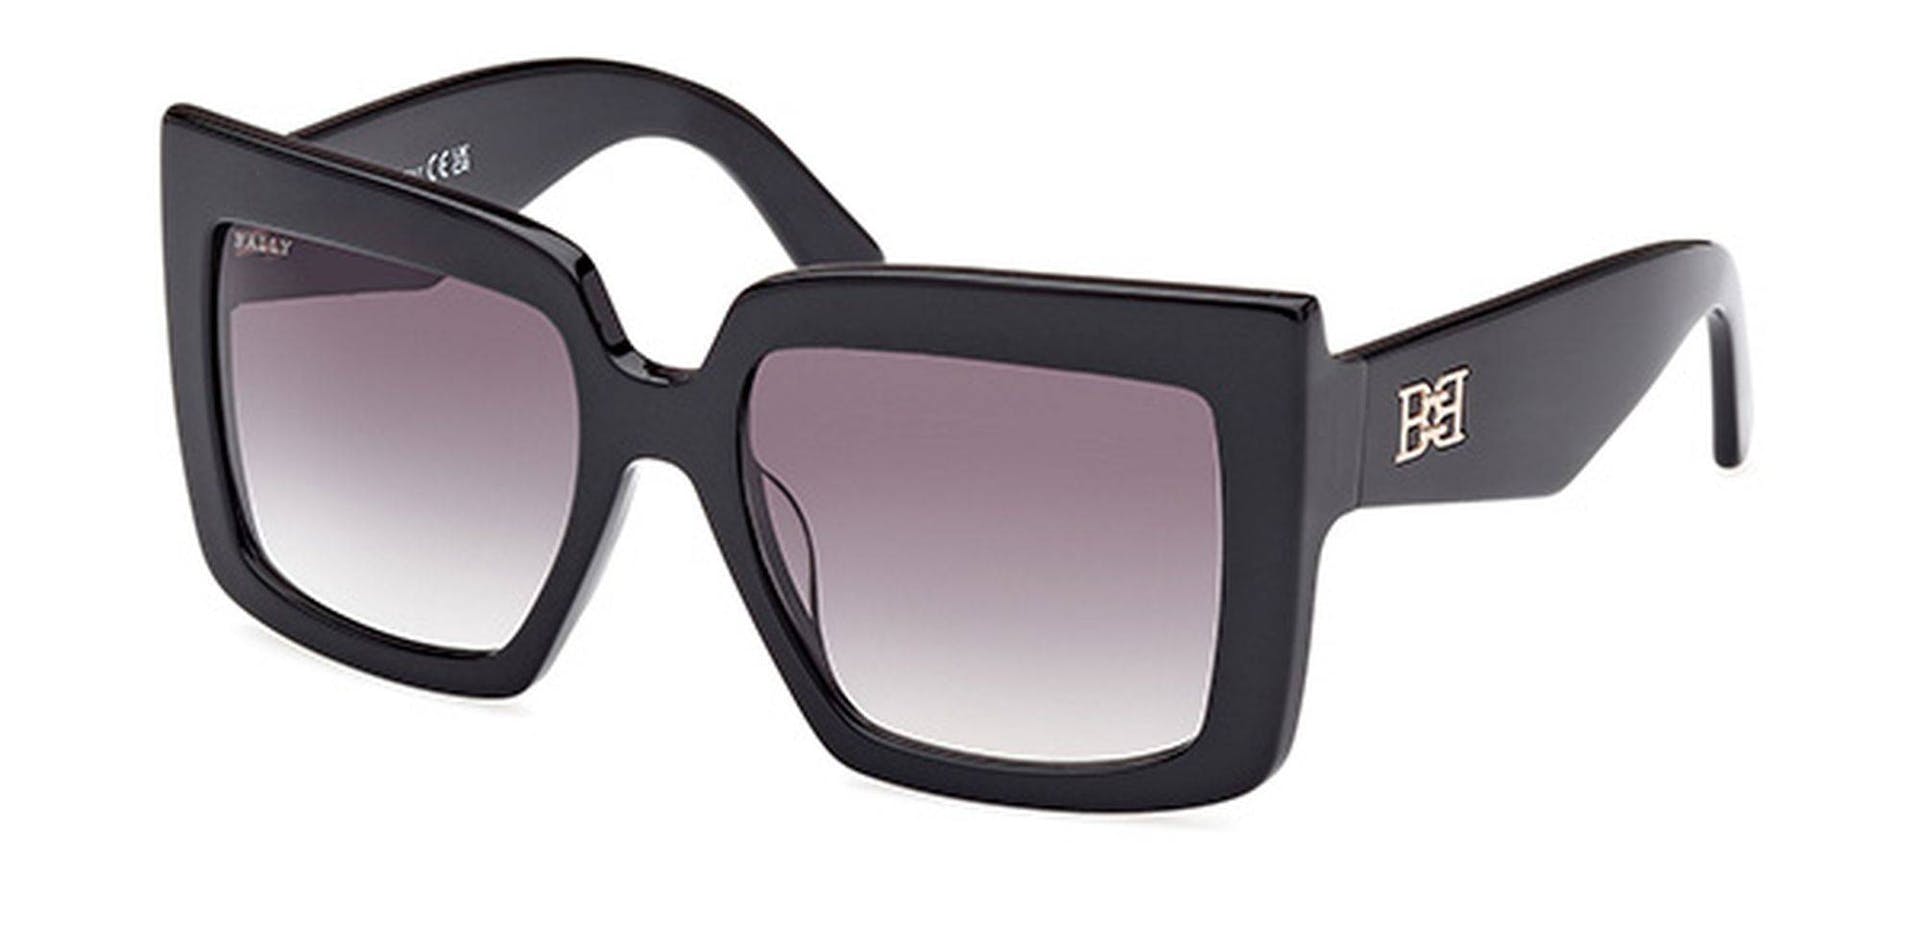 Carla Square Oversized Sunglasses In Black - Women's - Bally - 03